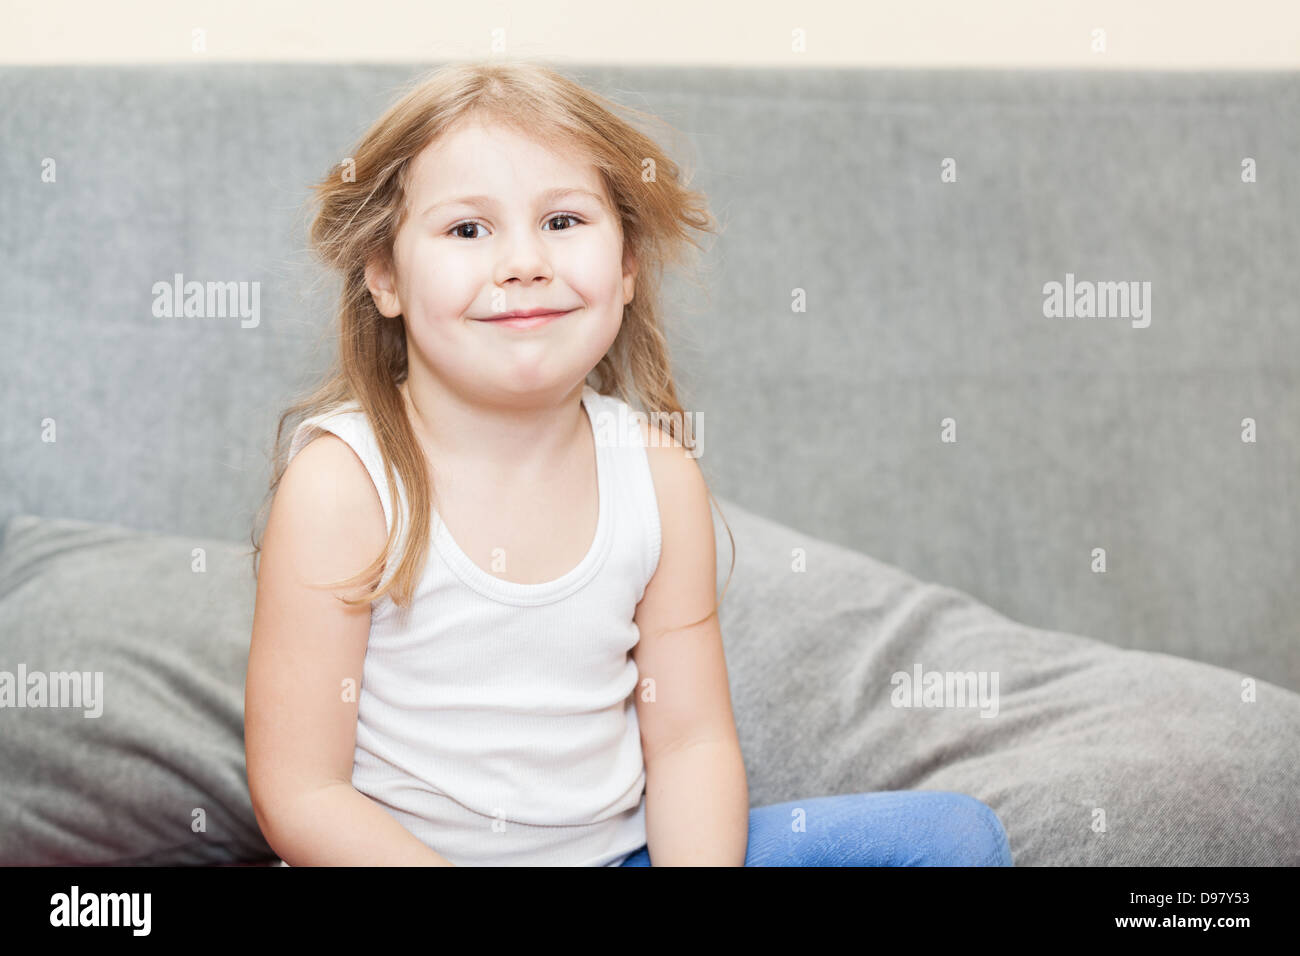 Wenig kaukasische Mädchen mit zerzausten Haaren sitzen auf der Couch mit einem listigen Grinsen Stockfoto